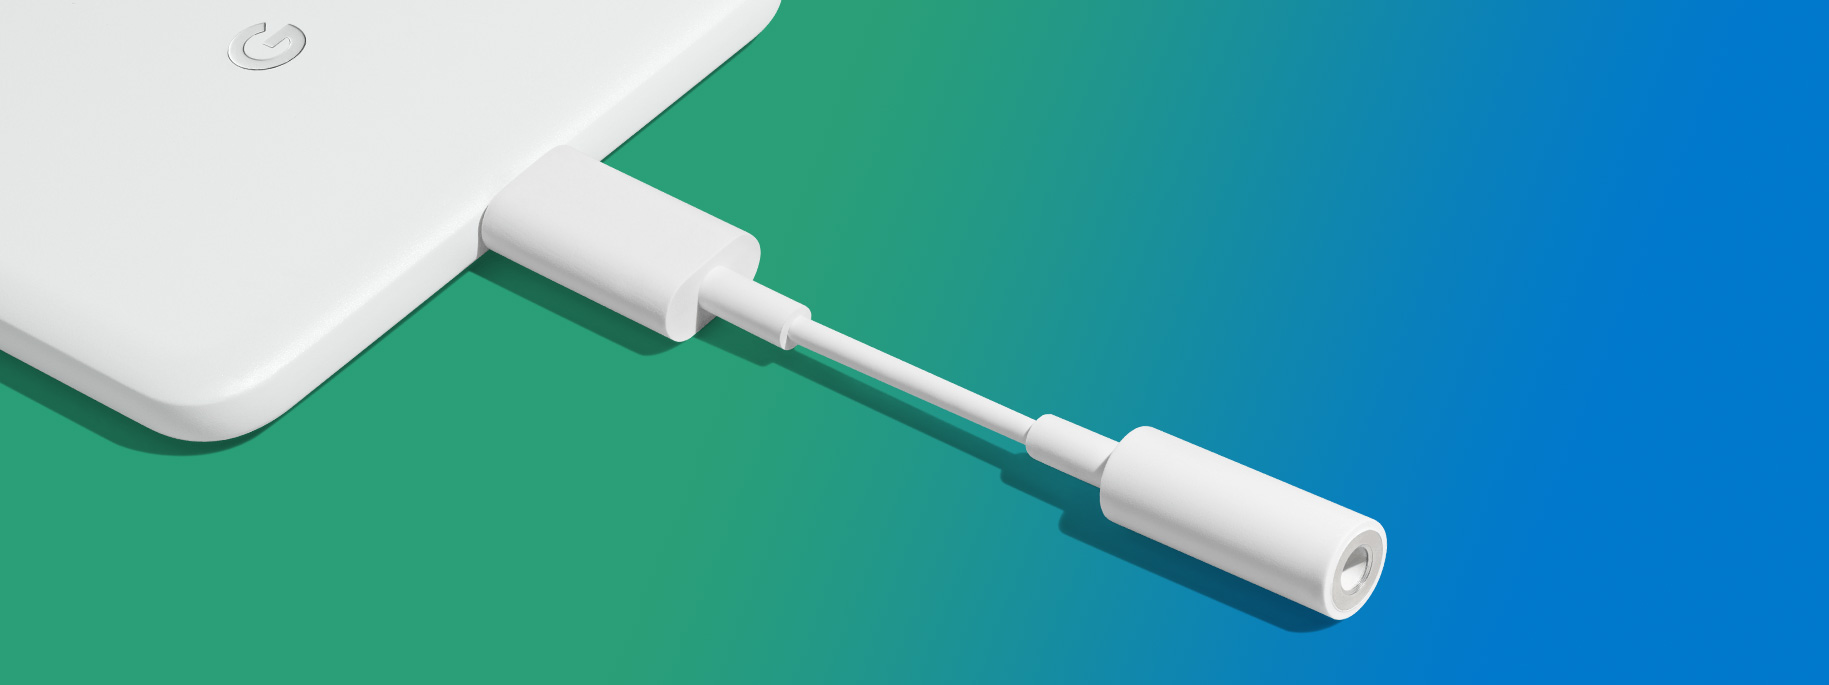 Google giảm giá adapter USB-C - jack 3,5mm xuống một nửa, đã bằng giá Apple